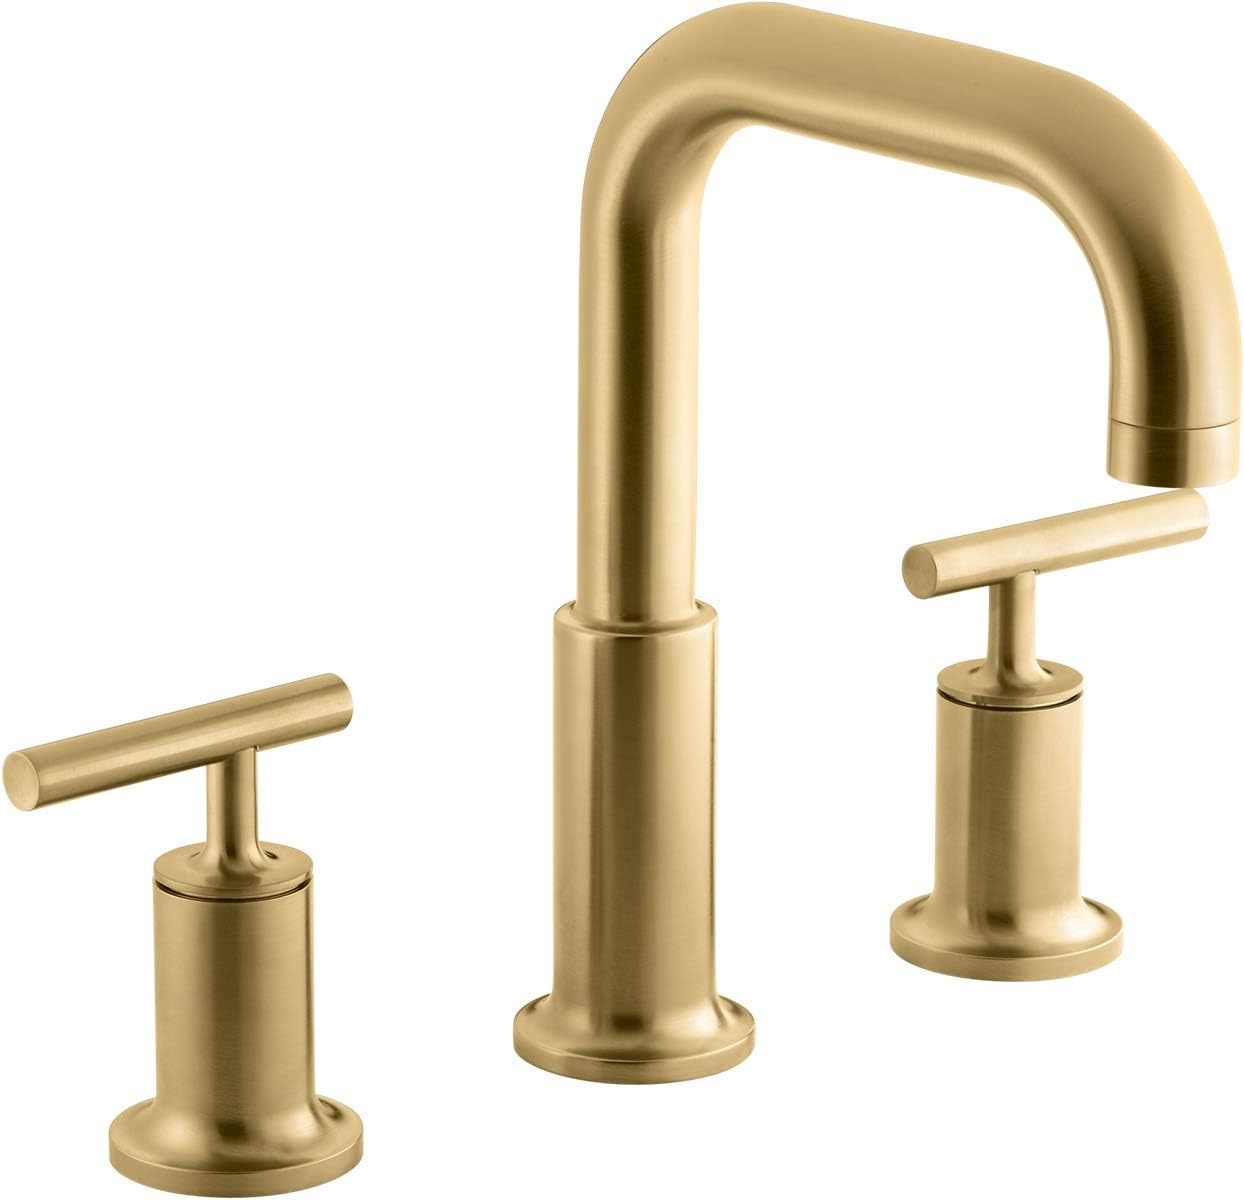 Primary image for Kohler T14428-4-2MB Purist Deck-Mount Bath Faucet Trim - Brushed Moderne Brass